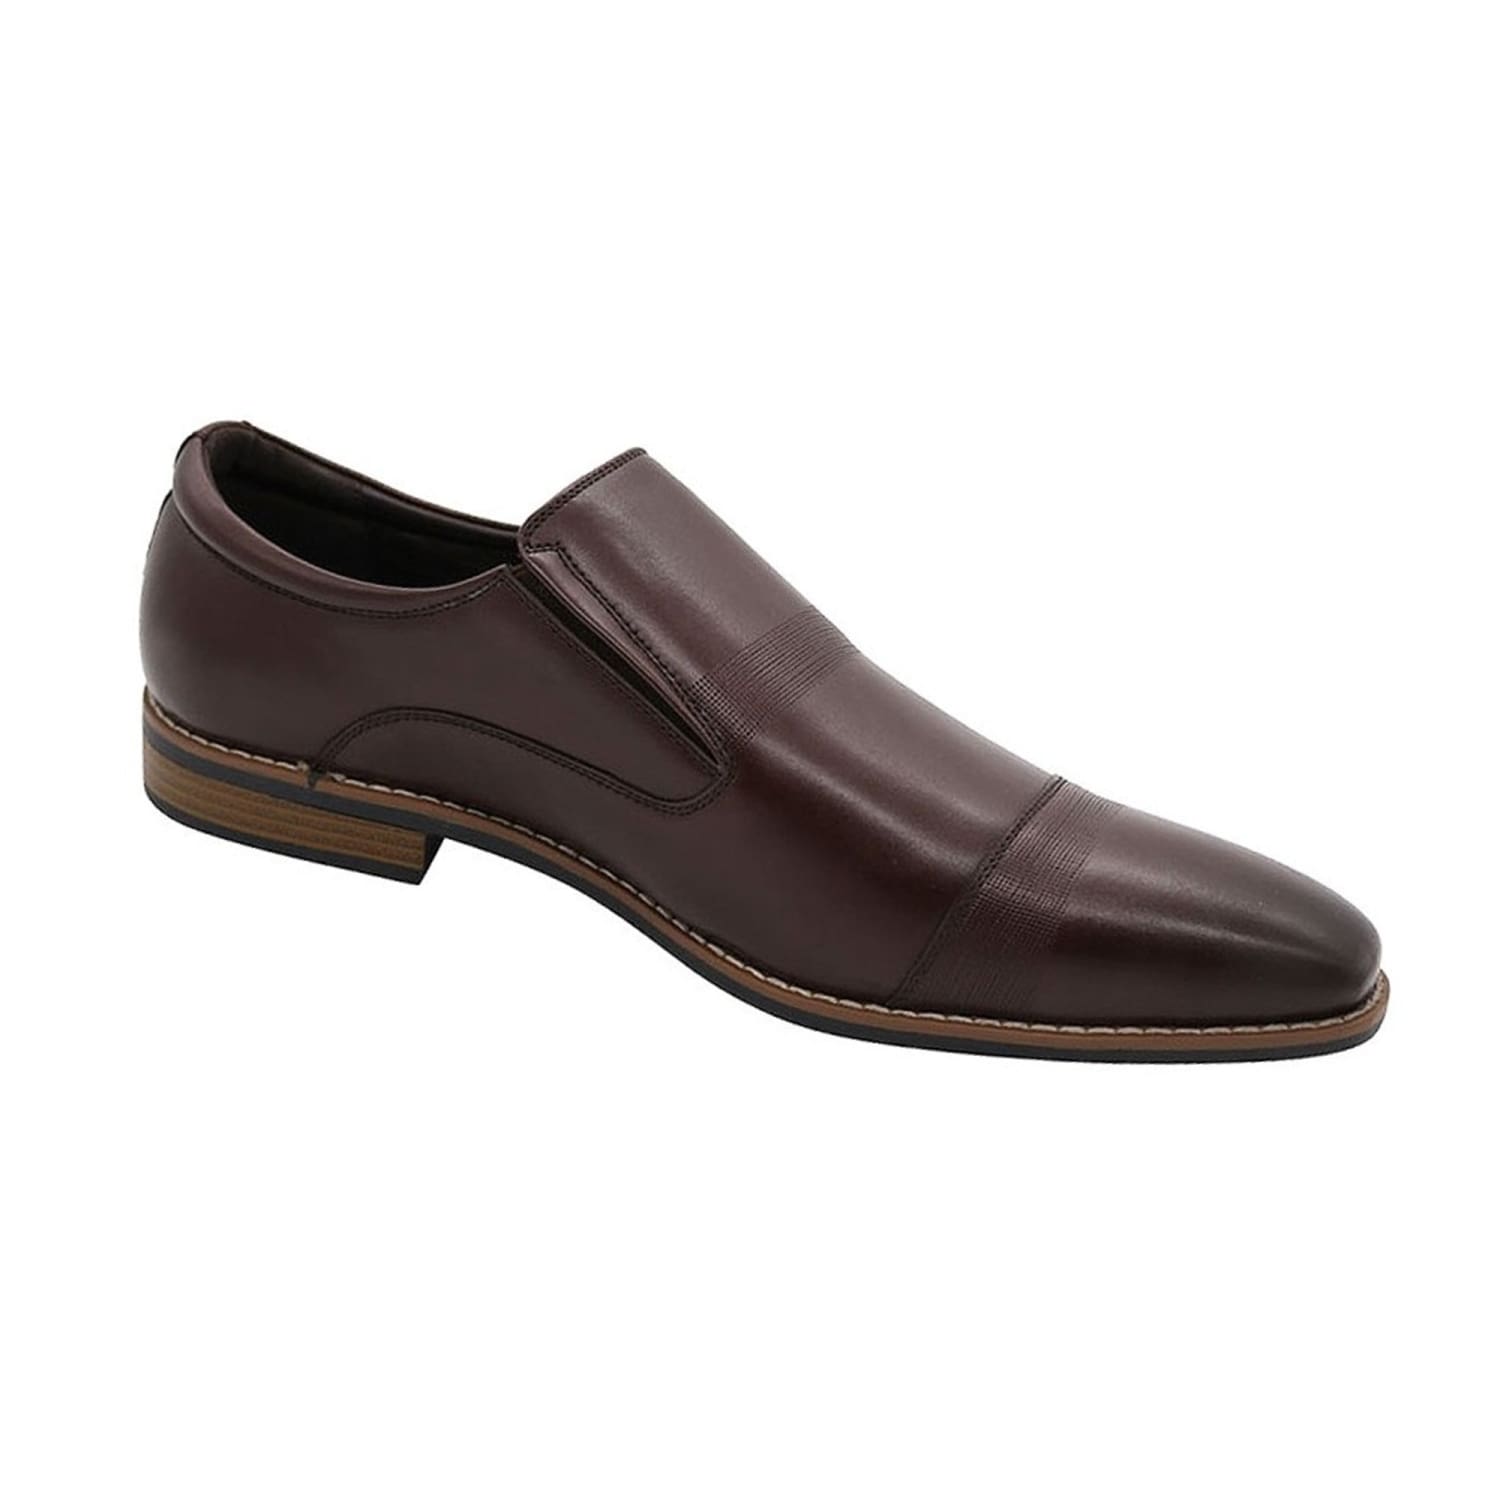 D555 Shoes - KS24149 - Junior - Brown 1